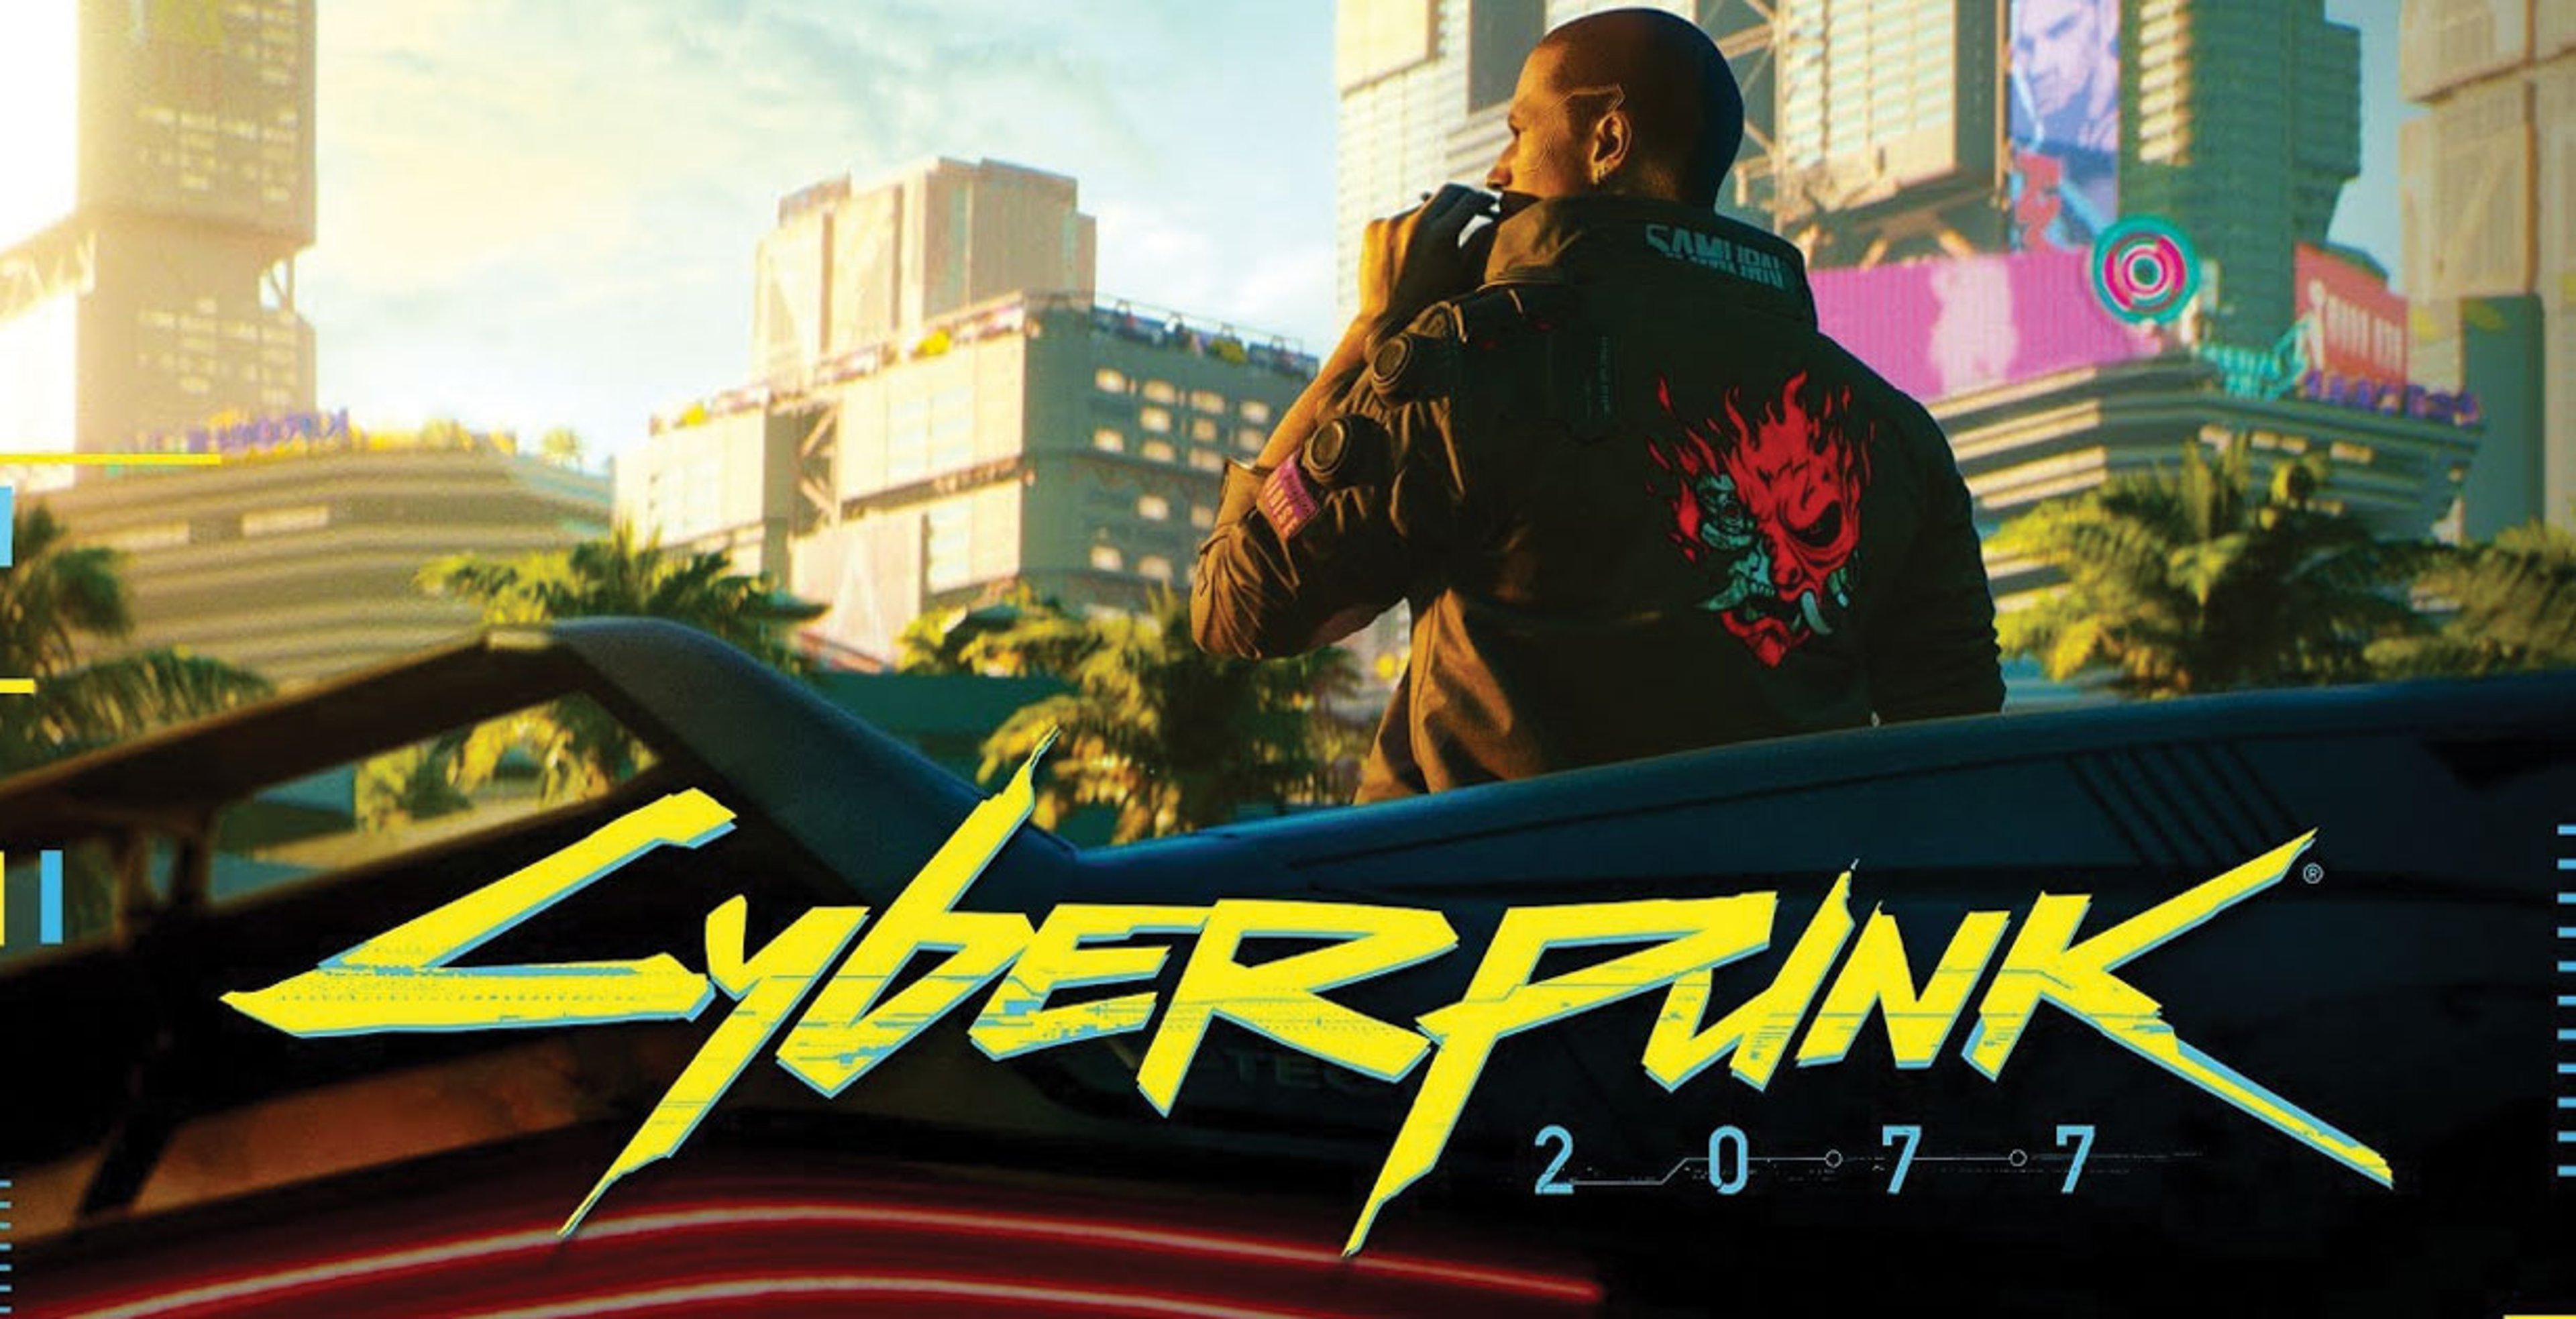 Cyberpunk 2077, impressioni dalla demo dell’E3 2018 – Anteprima Copertina